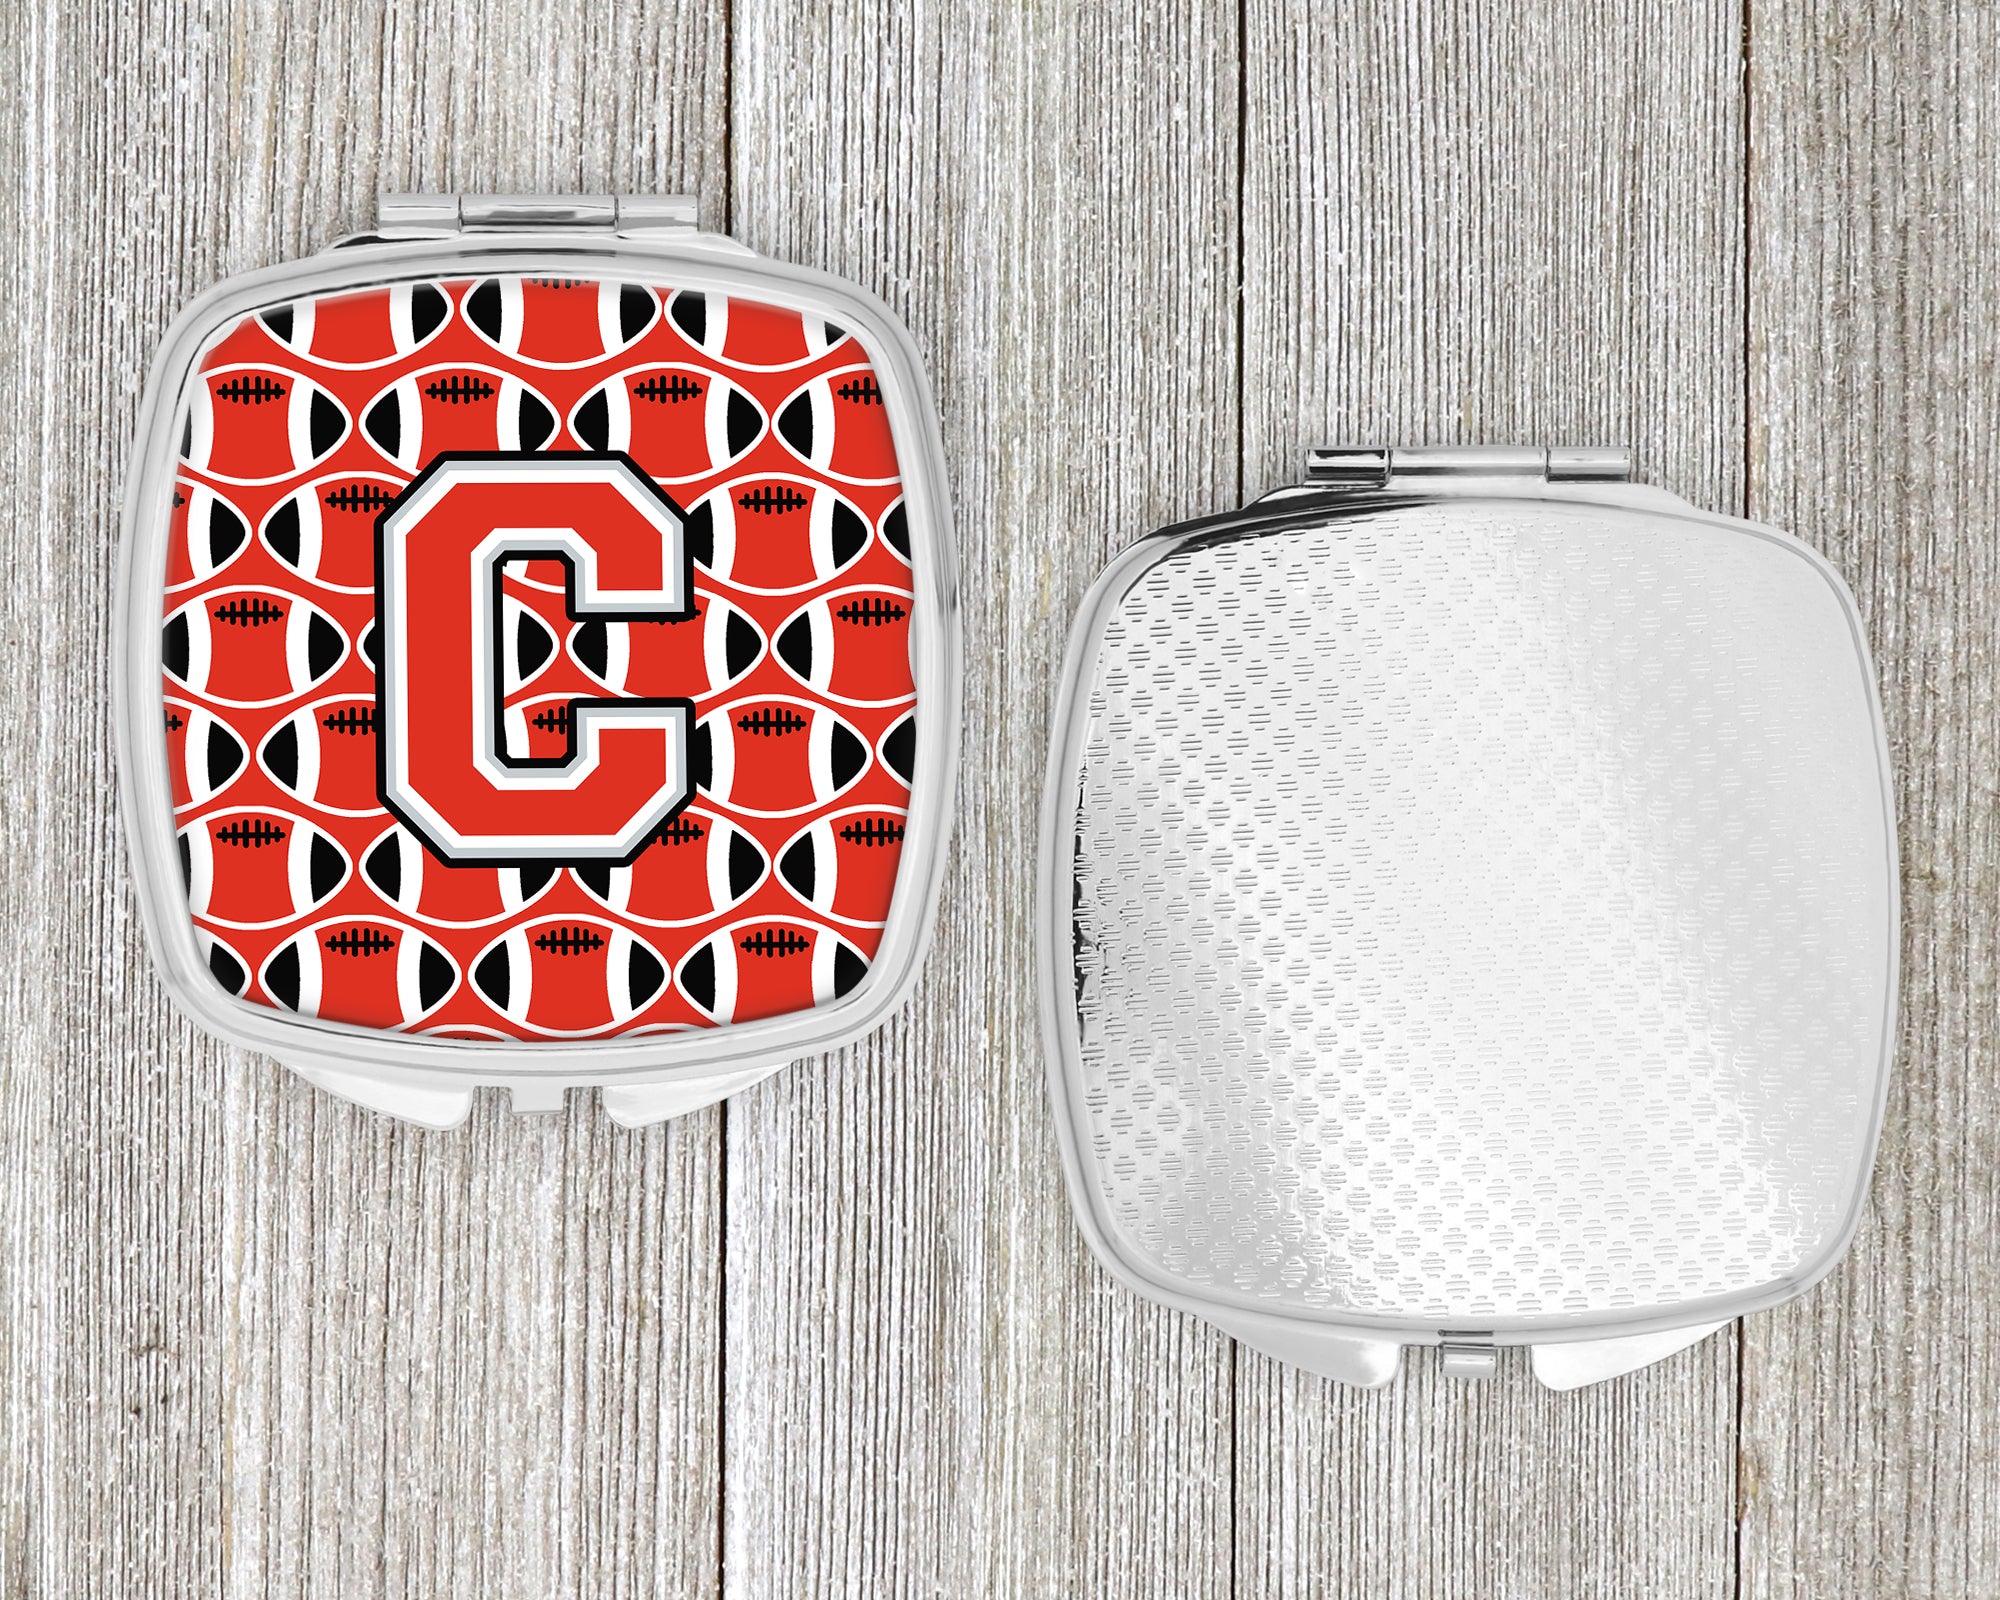 Miroir compact lettre C football écarlate et gris CJ1067-CSCM